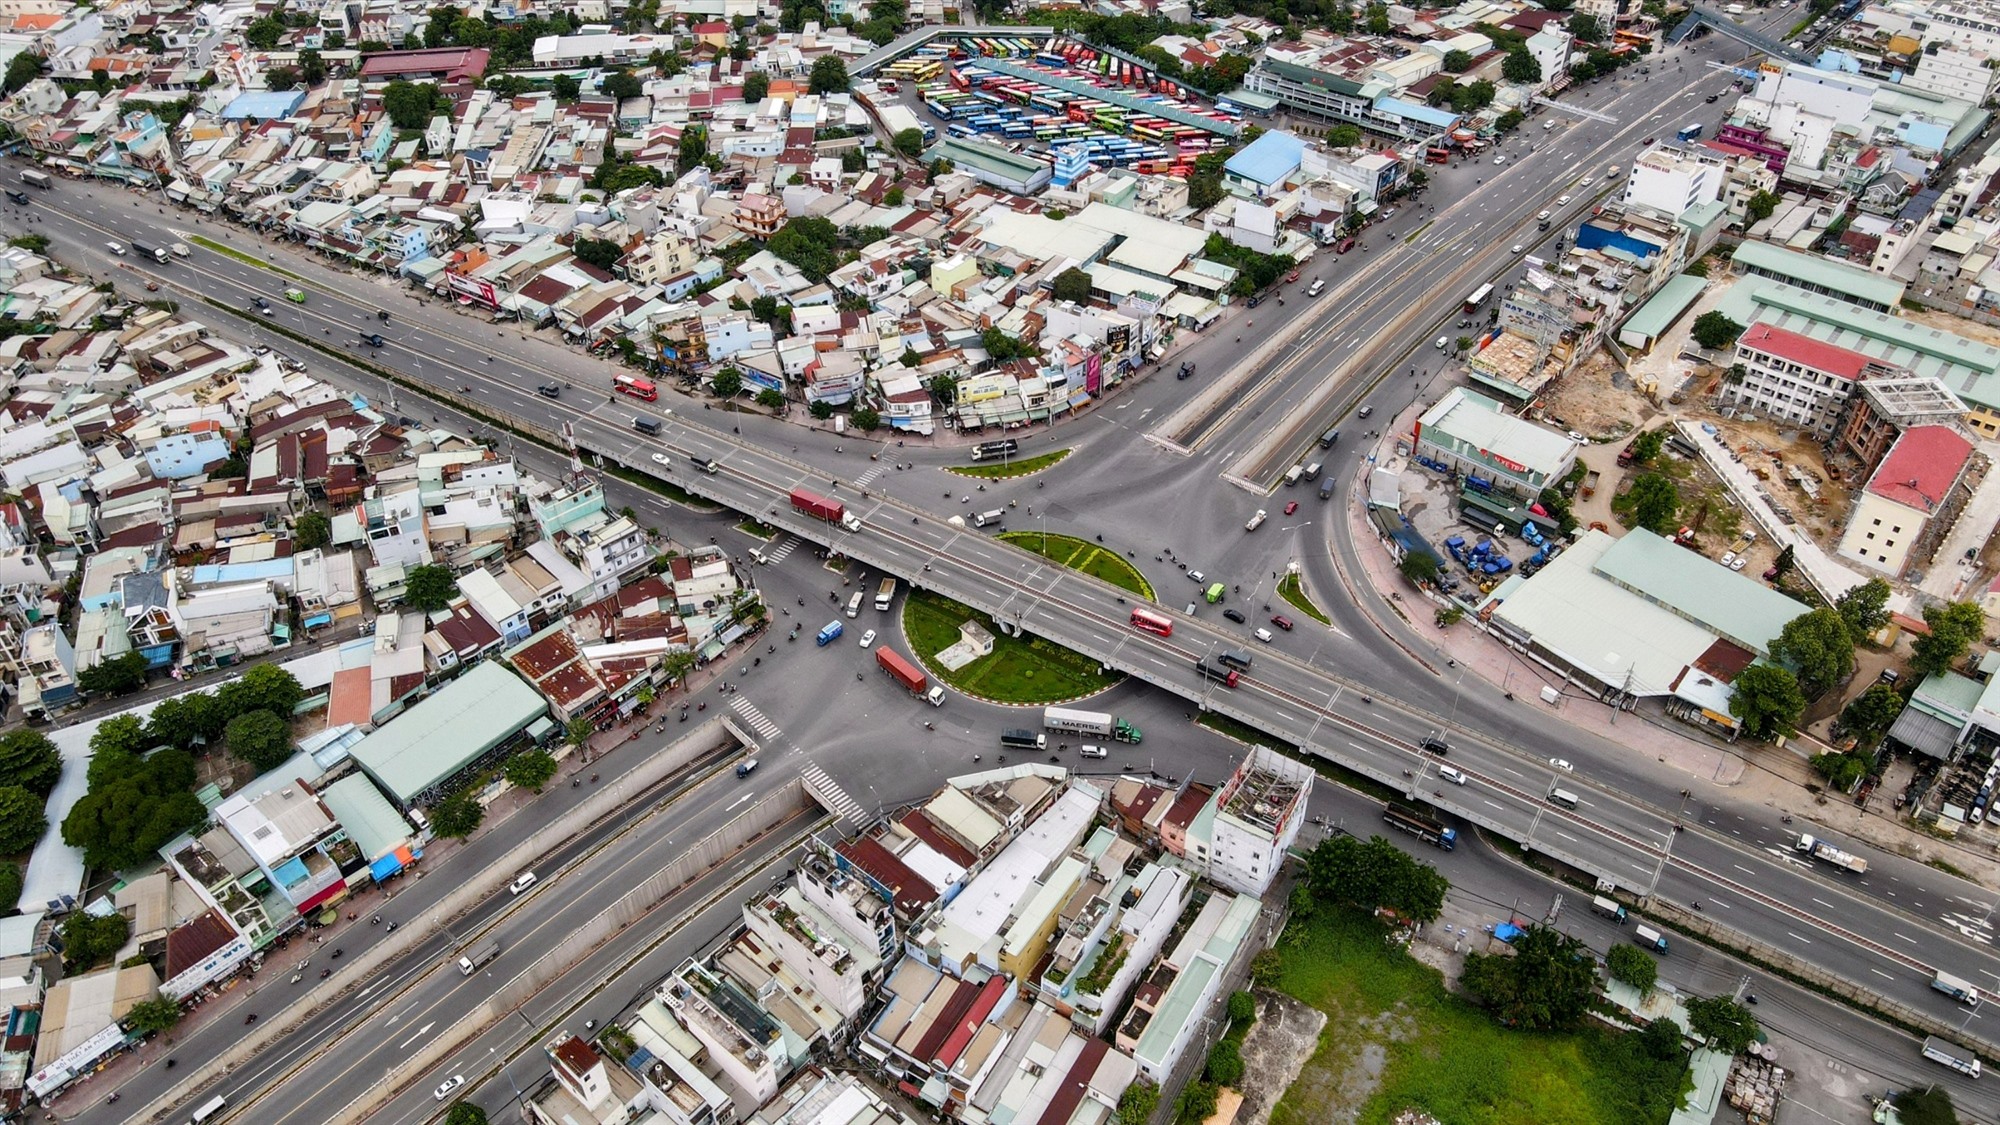 Hiện quốc lộ 22 đang trong tình trạng quá tải, xuống cấp, cần sớm được nâng cấp, mở rộng để đảm bảo việc lưu thông và cải thiện năng lực vận chuyển hàng hóa từ các tỉnh miền Đông, Tây Nam Bộ về TP Hồ Chí Minh.